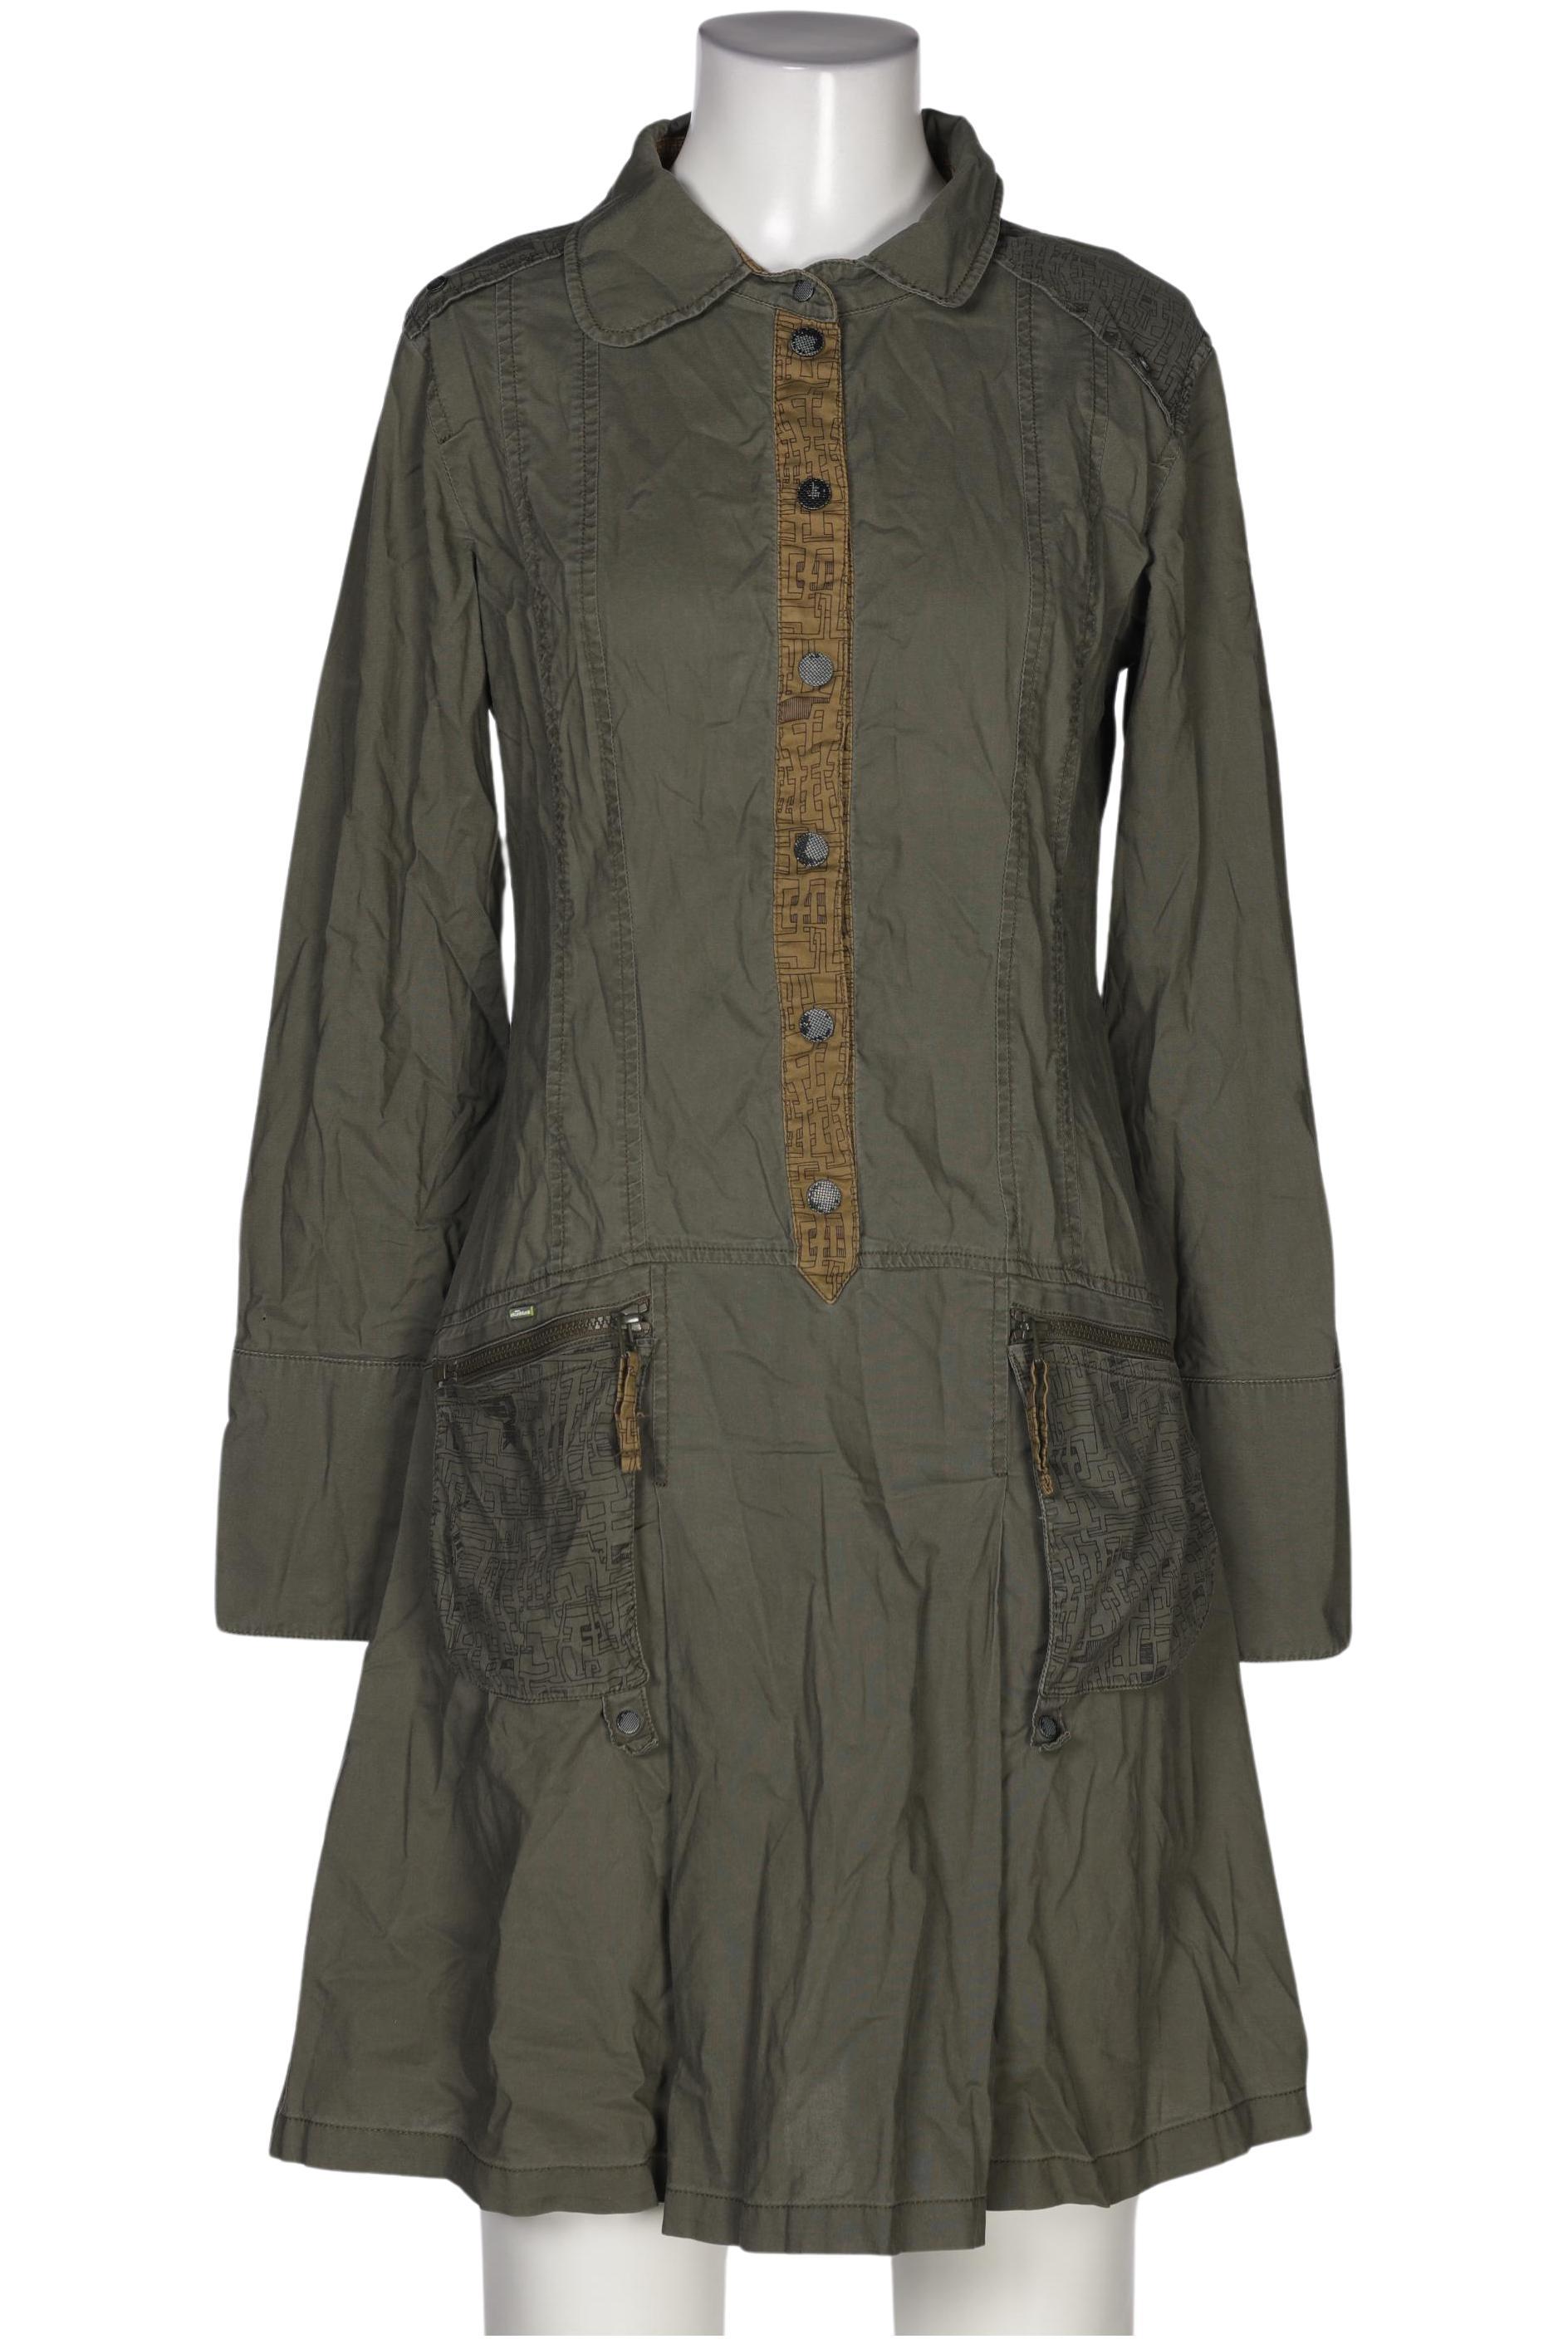 Skfk Damen Kleid, grün, Gr. 36 von SKFK